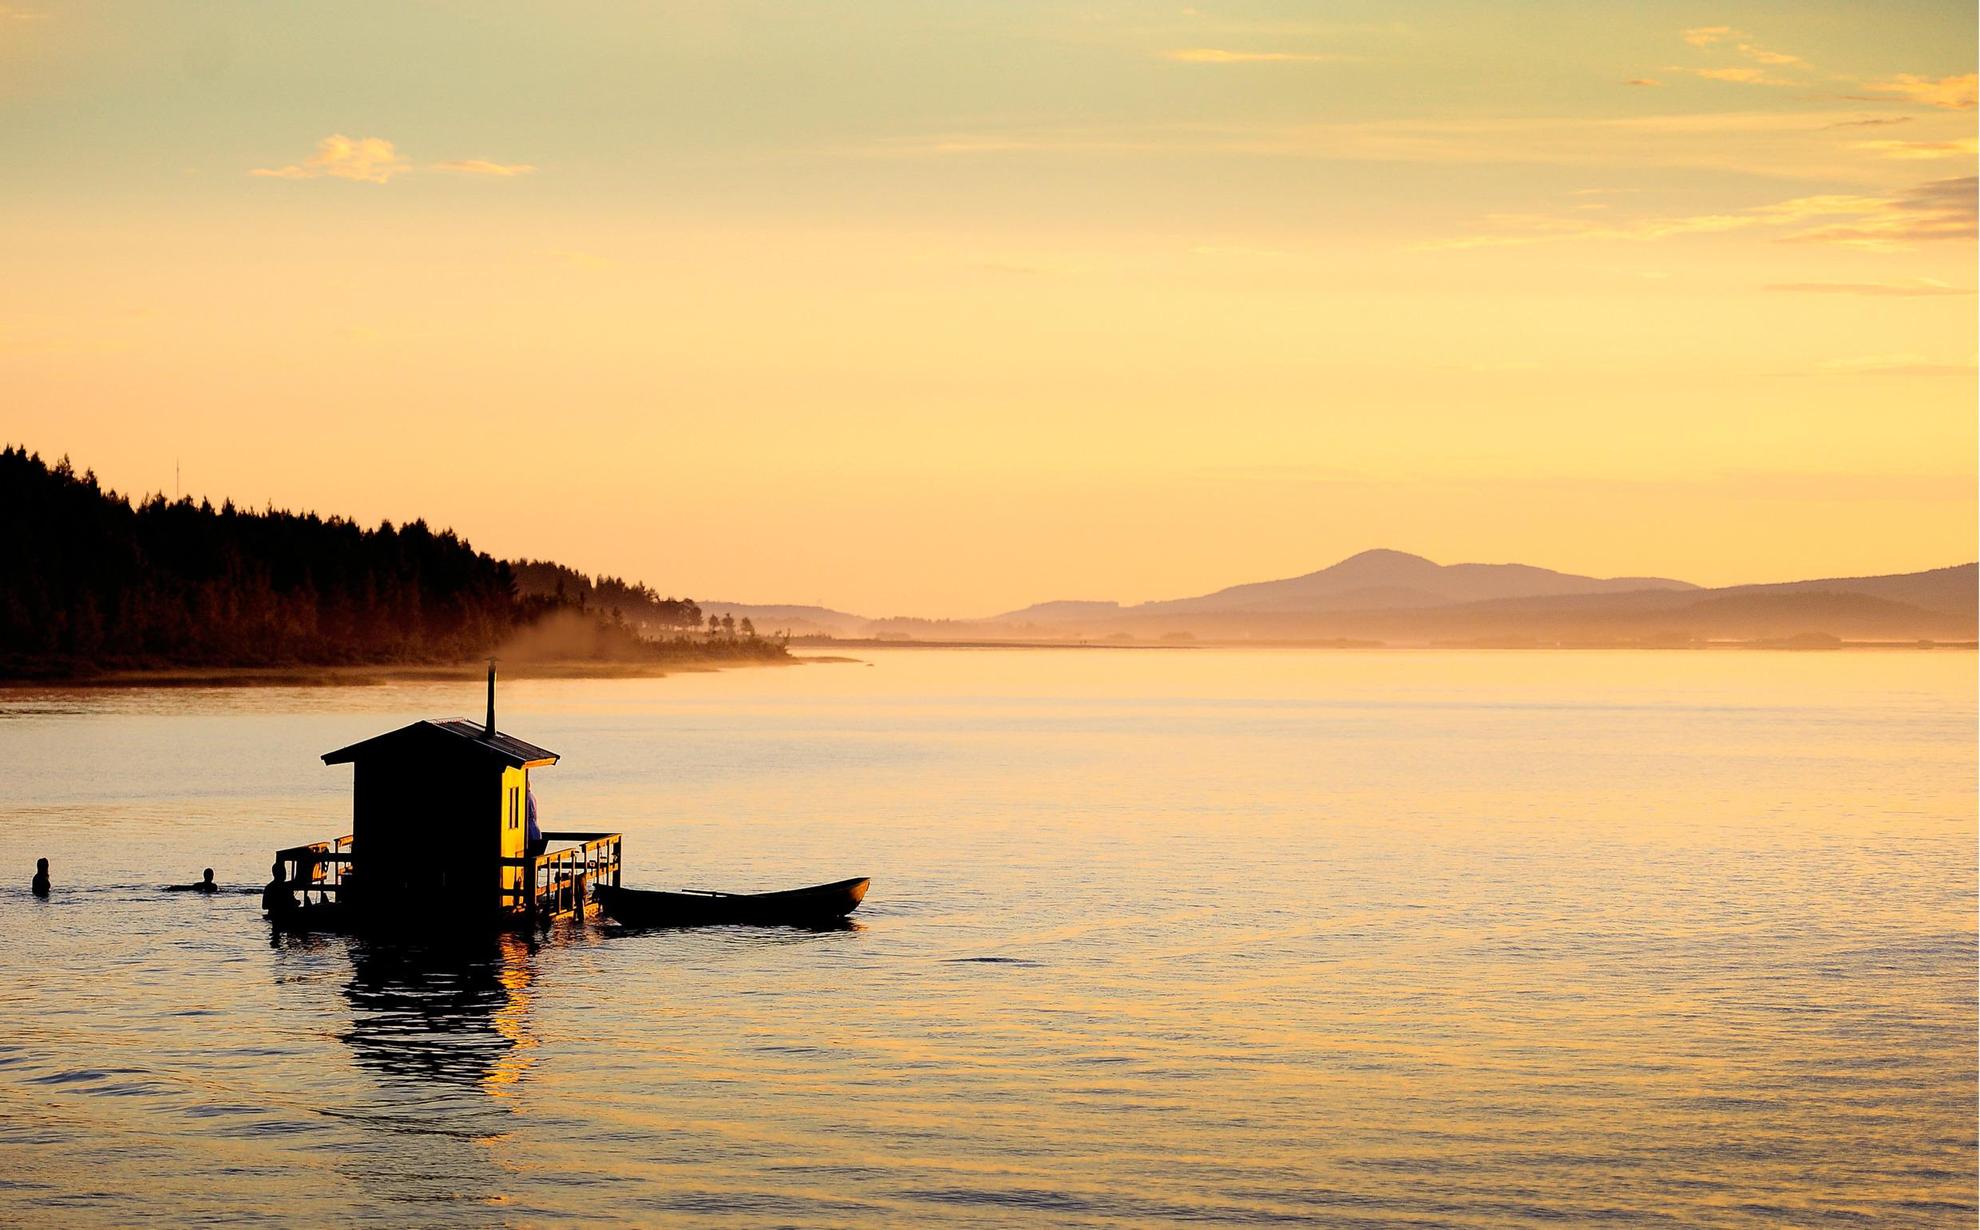 Un bateau-sauna sur un lac au coucher du soleil. Les gens se baignent près du sauna. Une barque est amarrée au bateau-sauna.